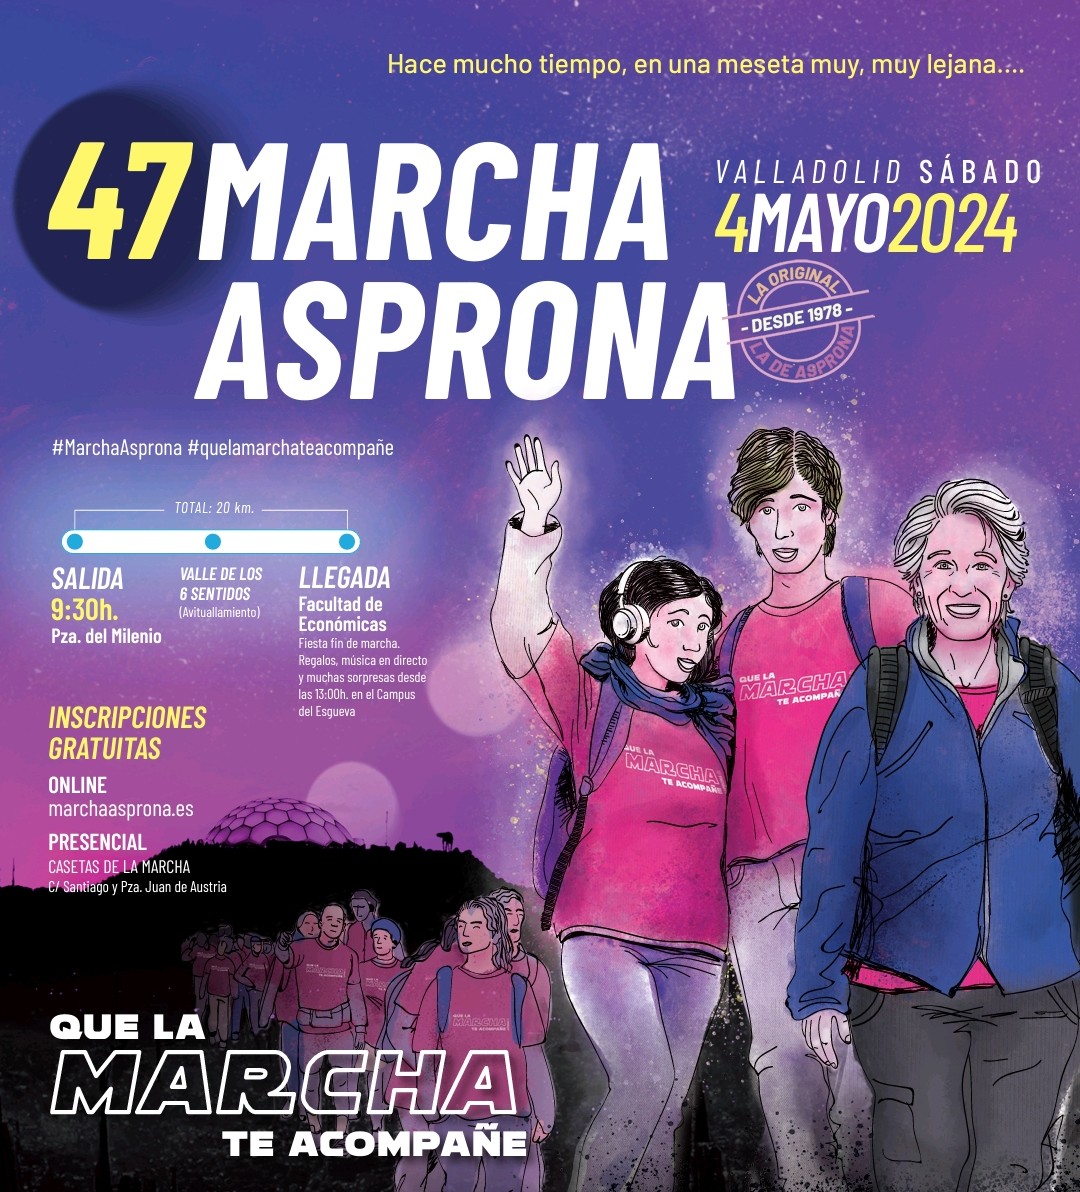 ¡¡Que la marcha te acompañe 💫!! Este sábado, 4 de mayo, miles de andarines se reunirán para celebrar la 47 edición de la Marcha Asprona. Ejercicio solidario con familia y amigos a favor de la causa de @Asprona_Vall Inscripciones 🔗 marchaasprona.es/?gad_source=1&…